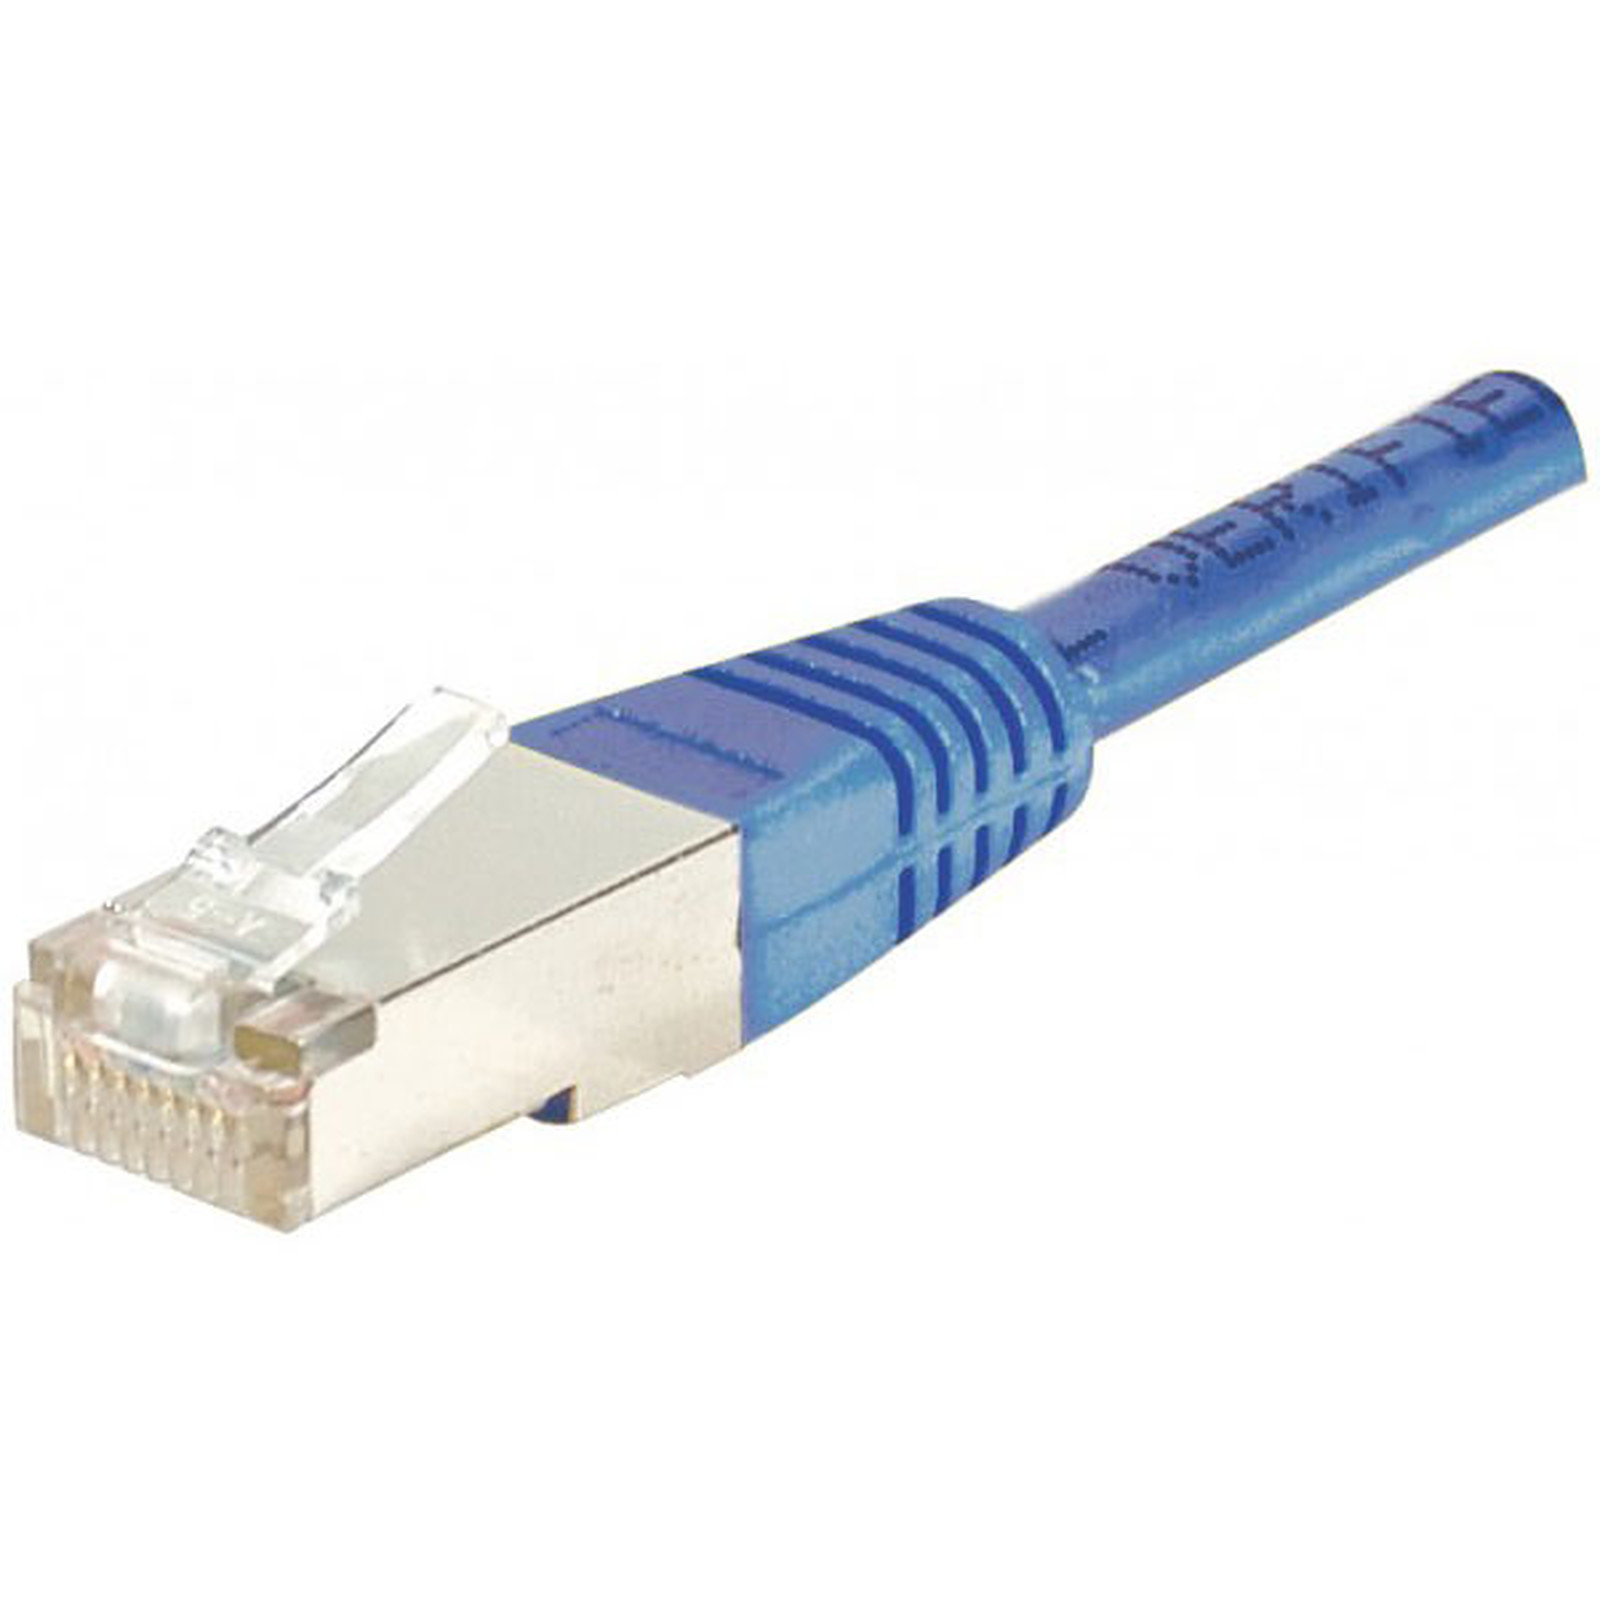 Cable RJ45 categorie 5e F/UTP 5 m (Bleu) - Cable RJ45 Generique